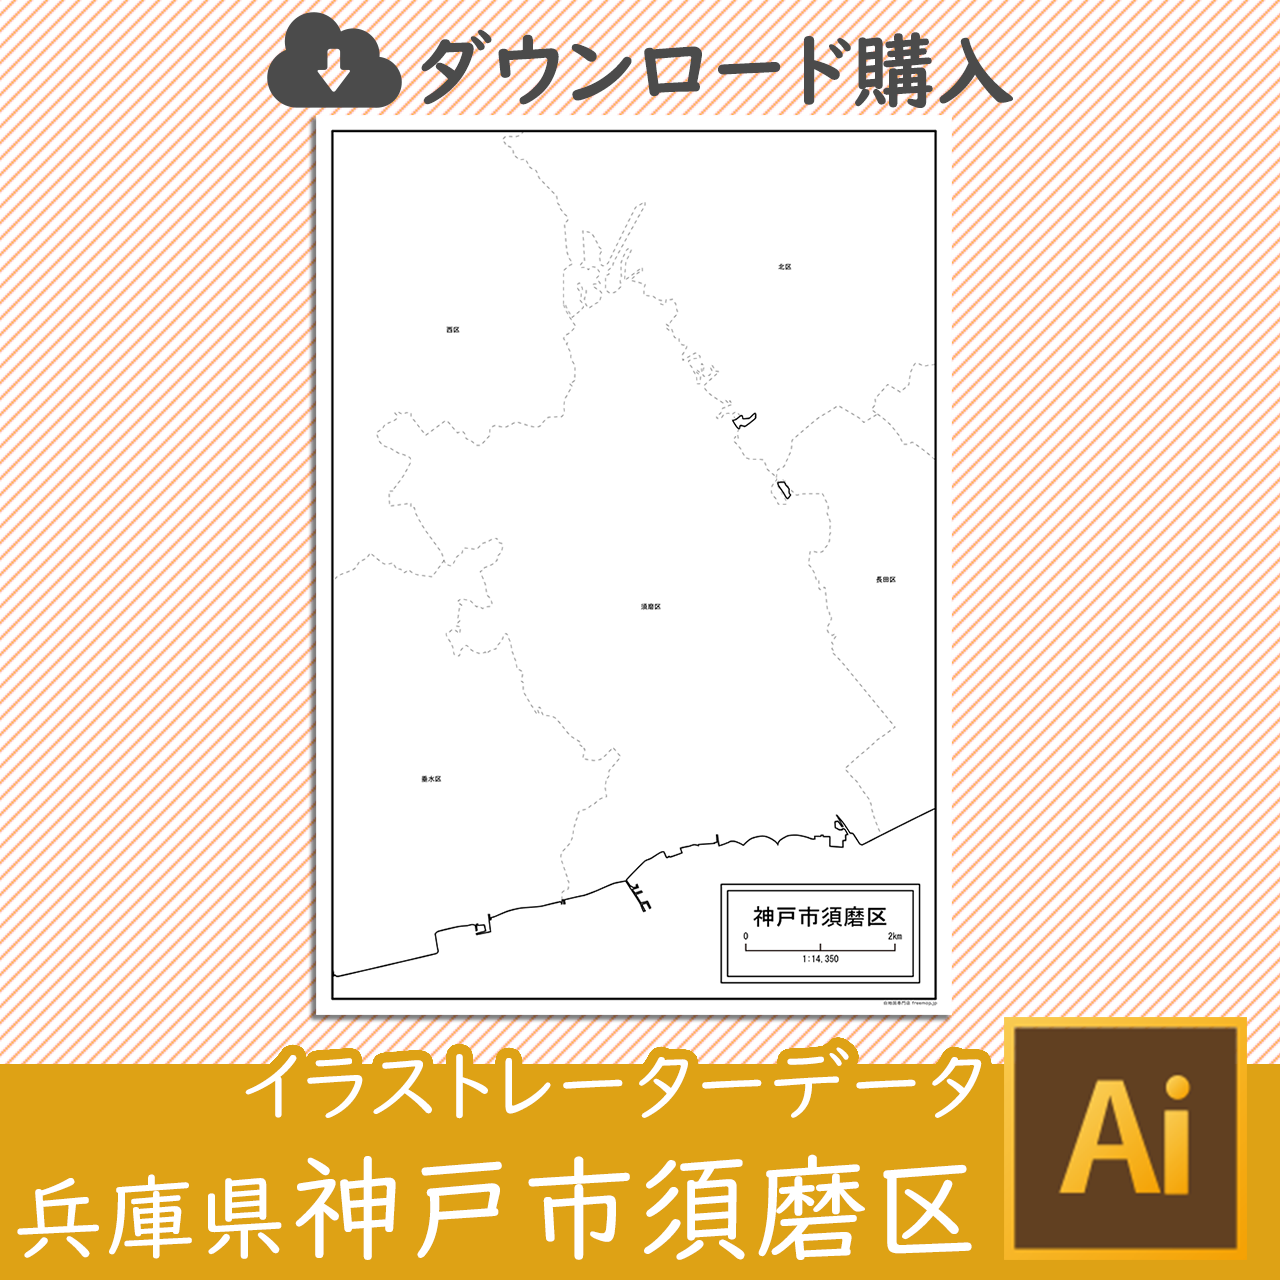 神戸市須磨区のaiデータのサムネイル画像